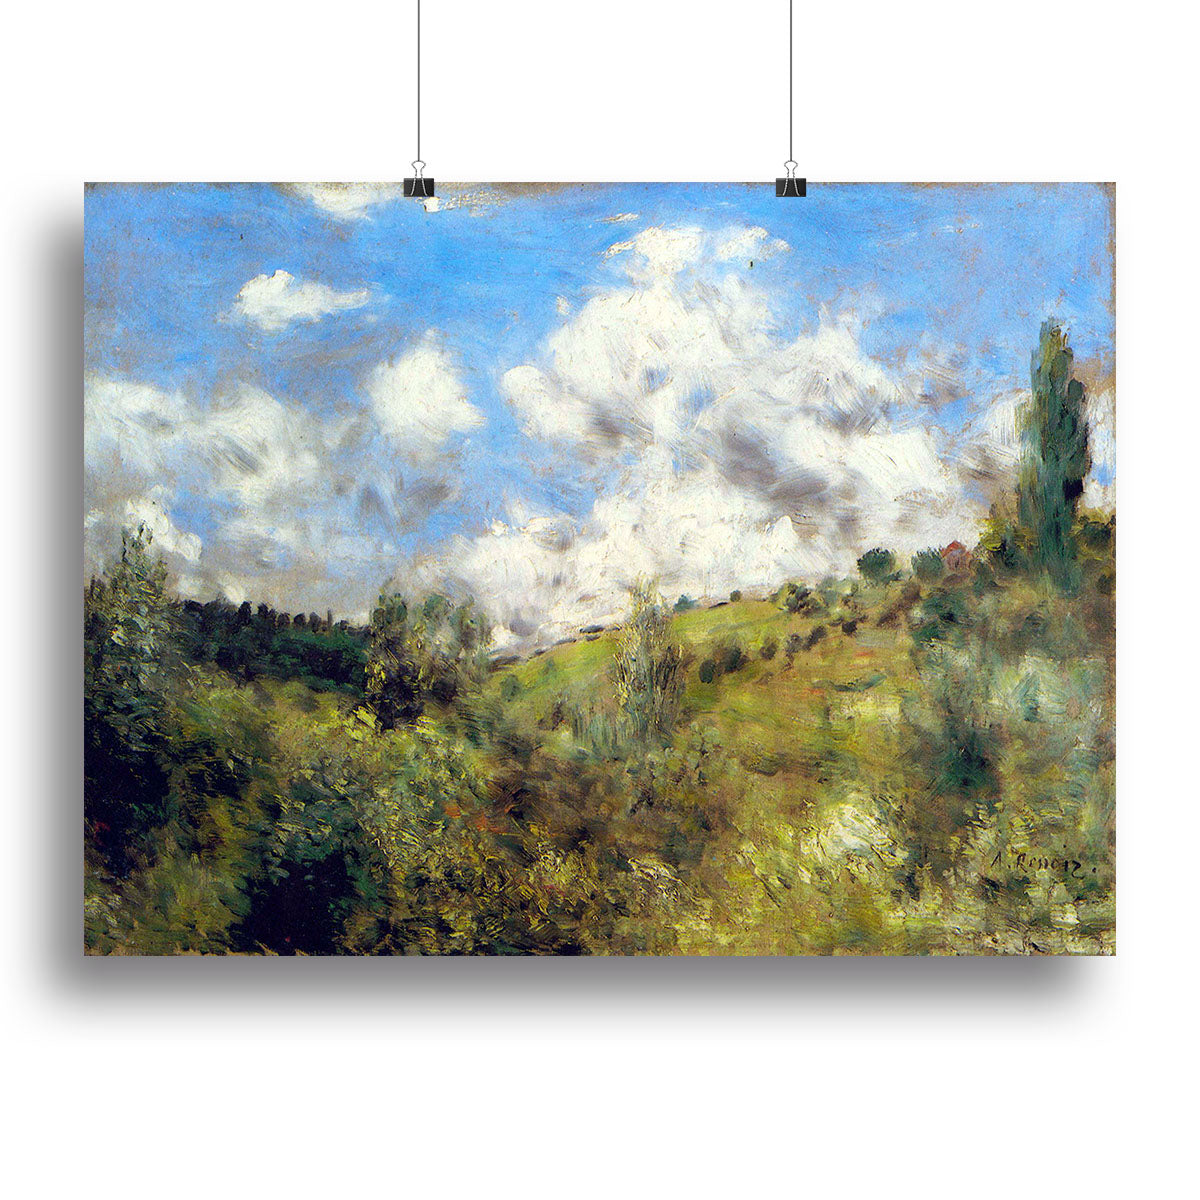 Landscape by Renoir Canvas Print or Poster - Canvas Art Rocks - 2